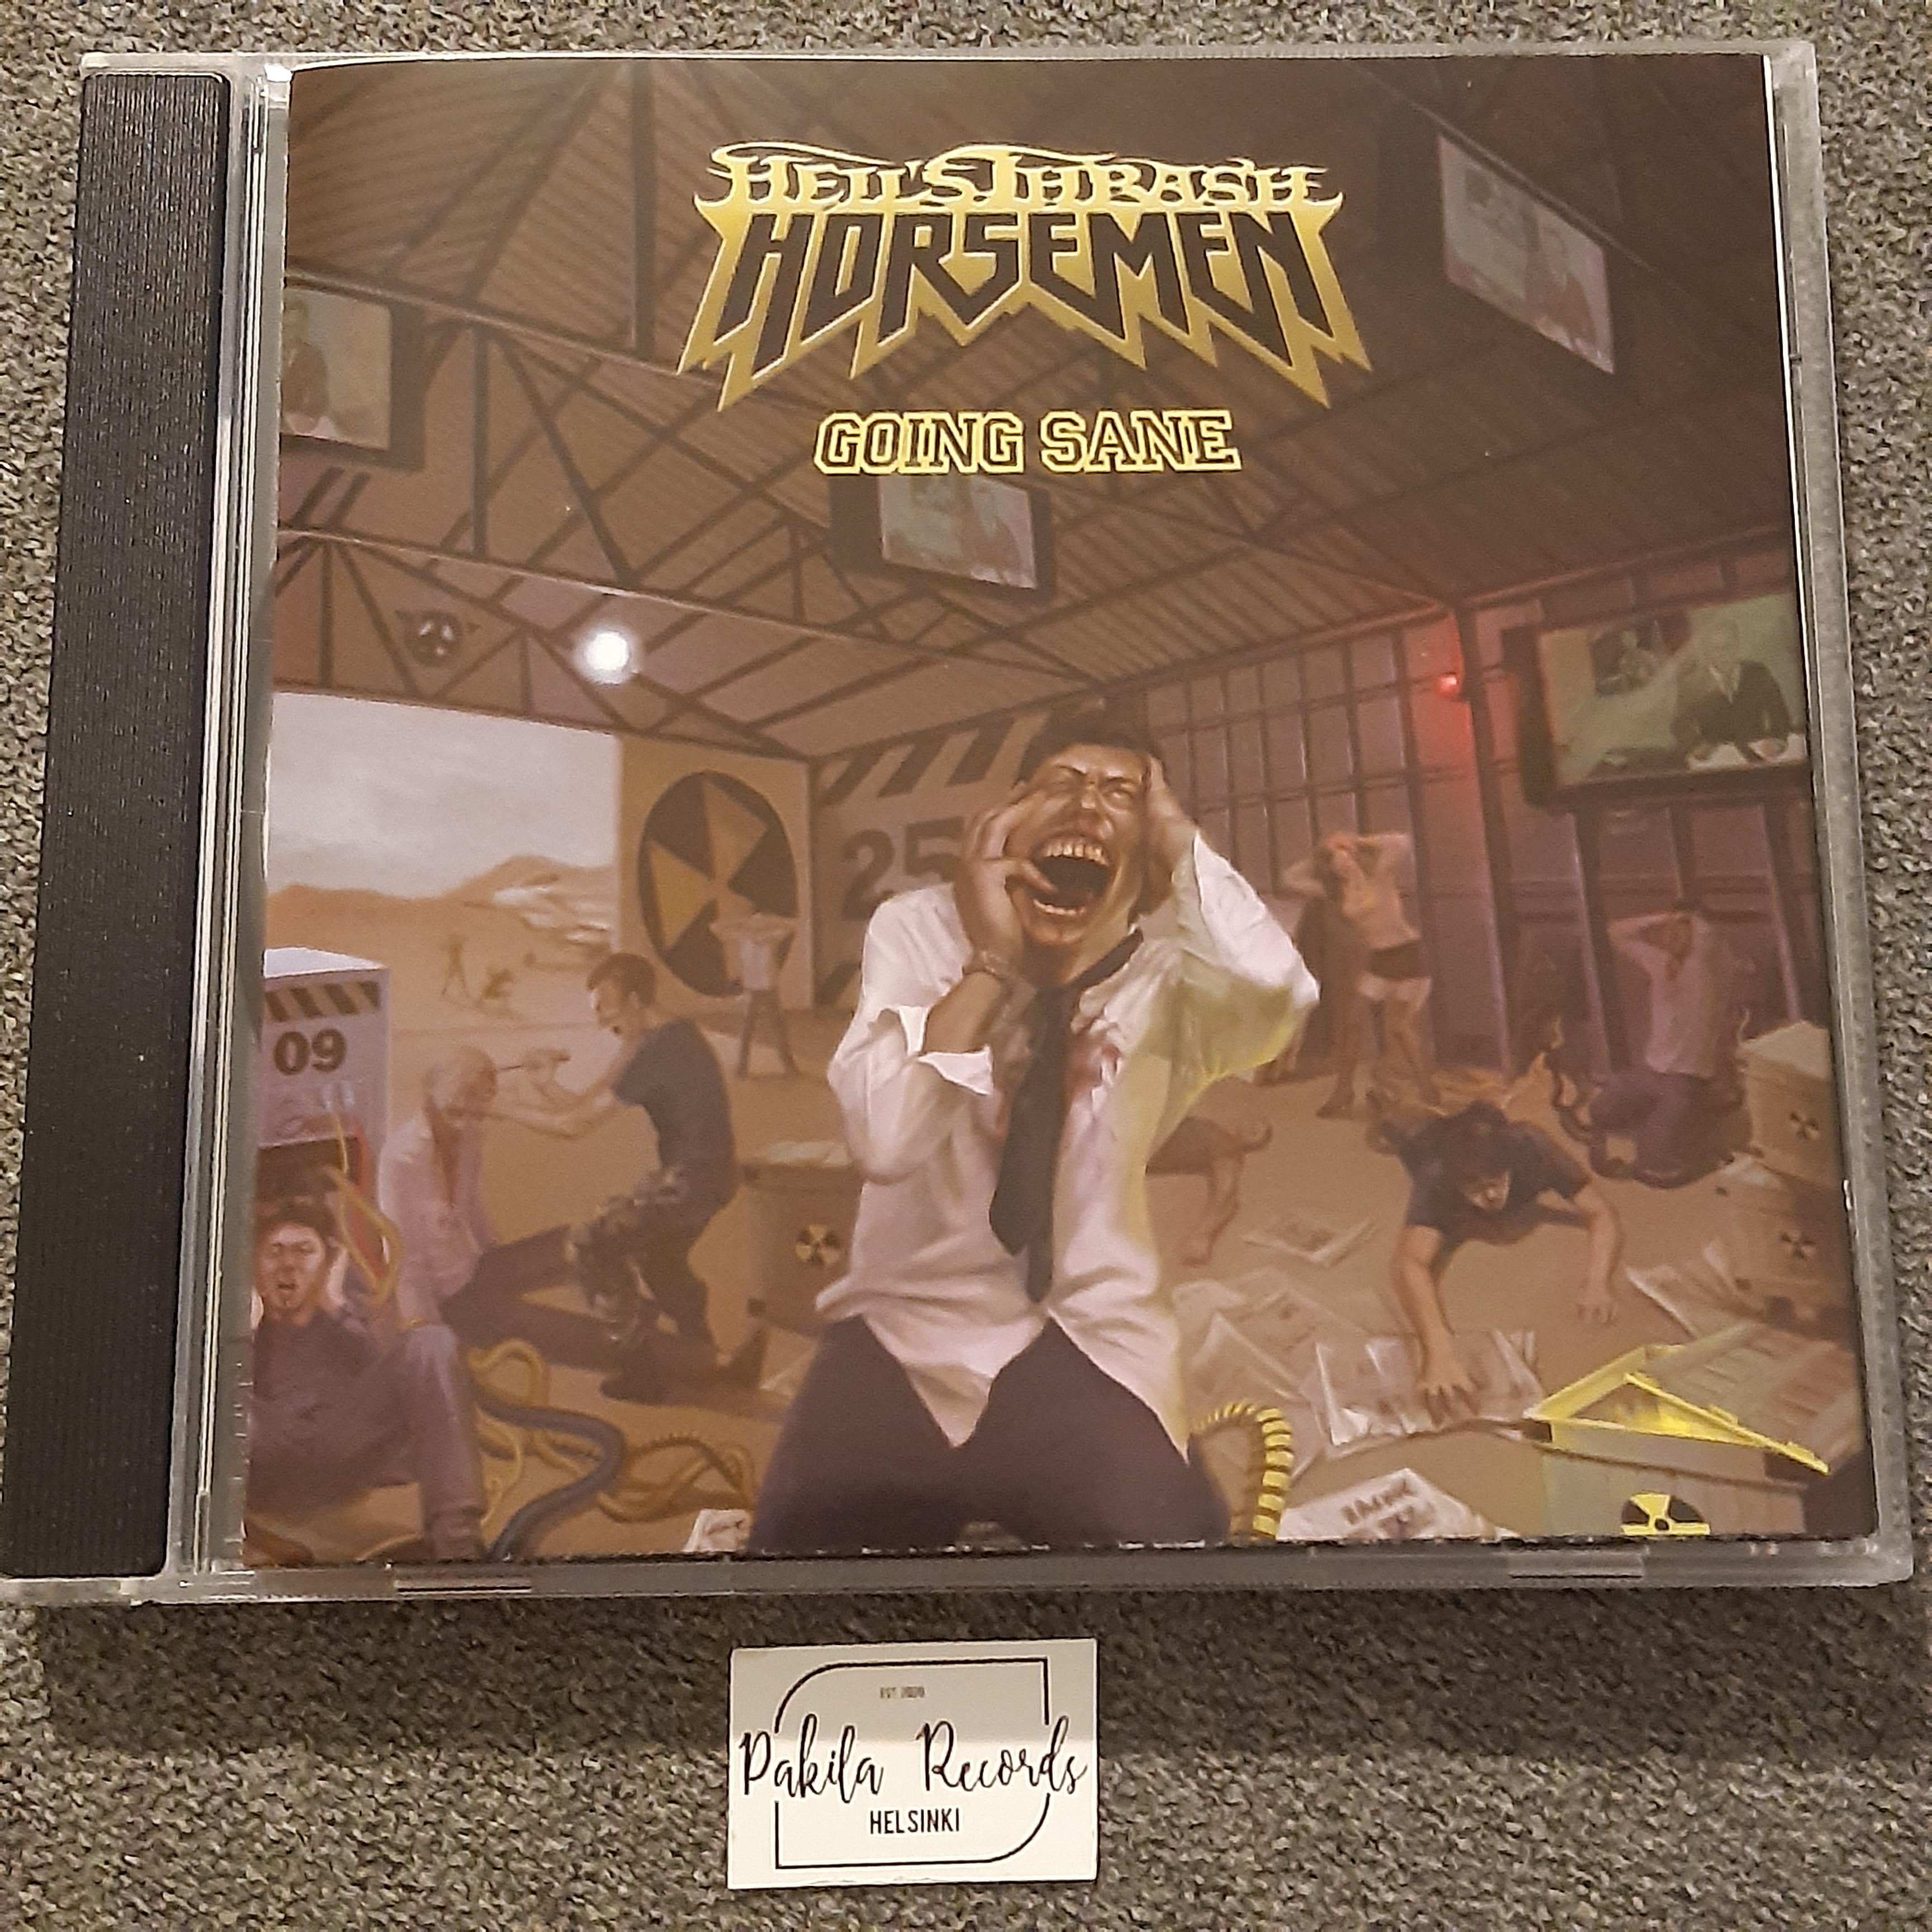 Hell's Thrash Horsemen - Going Sane - CD (käytetty)